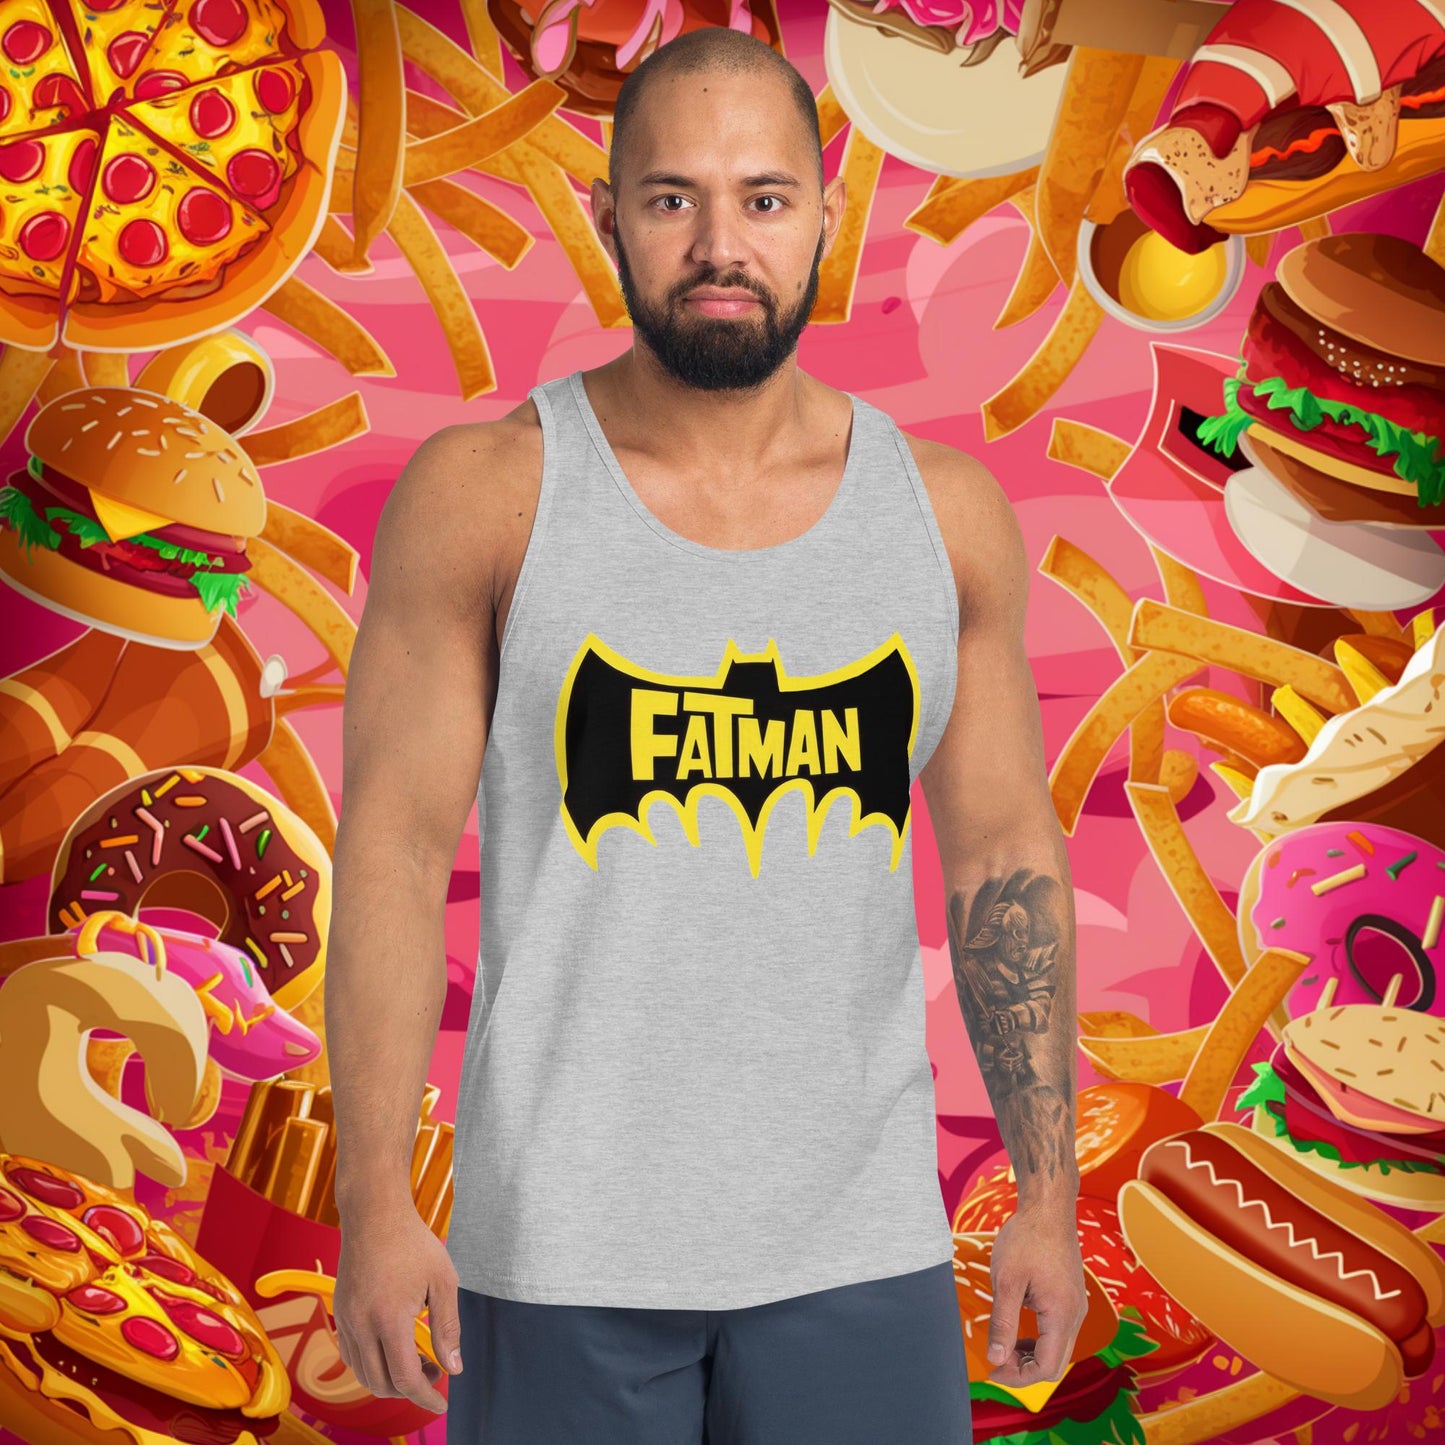 FatMan Funny Fat Superhero Tank Top Next Cult Brand